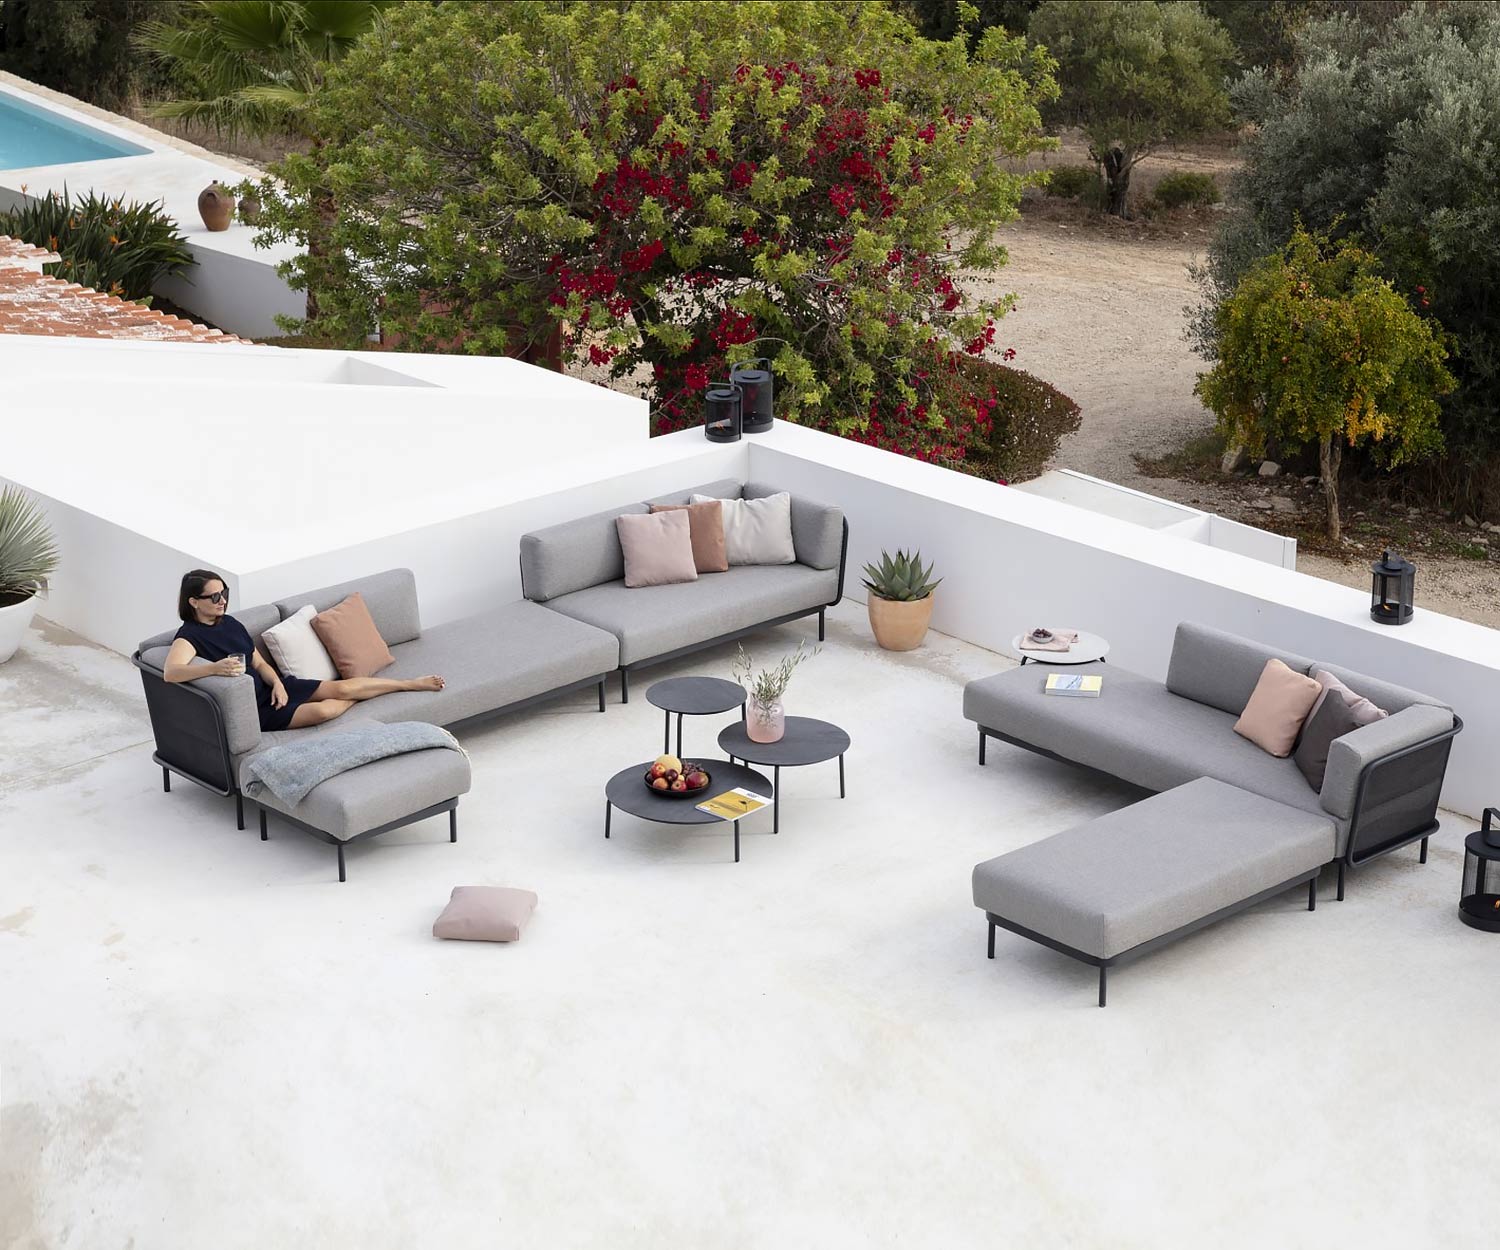 Exclusive Todus Baza design garden sofa on the terrace